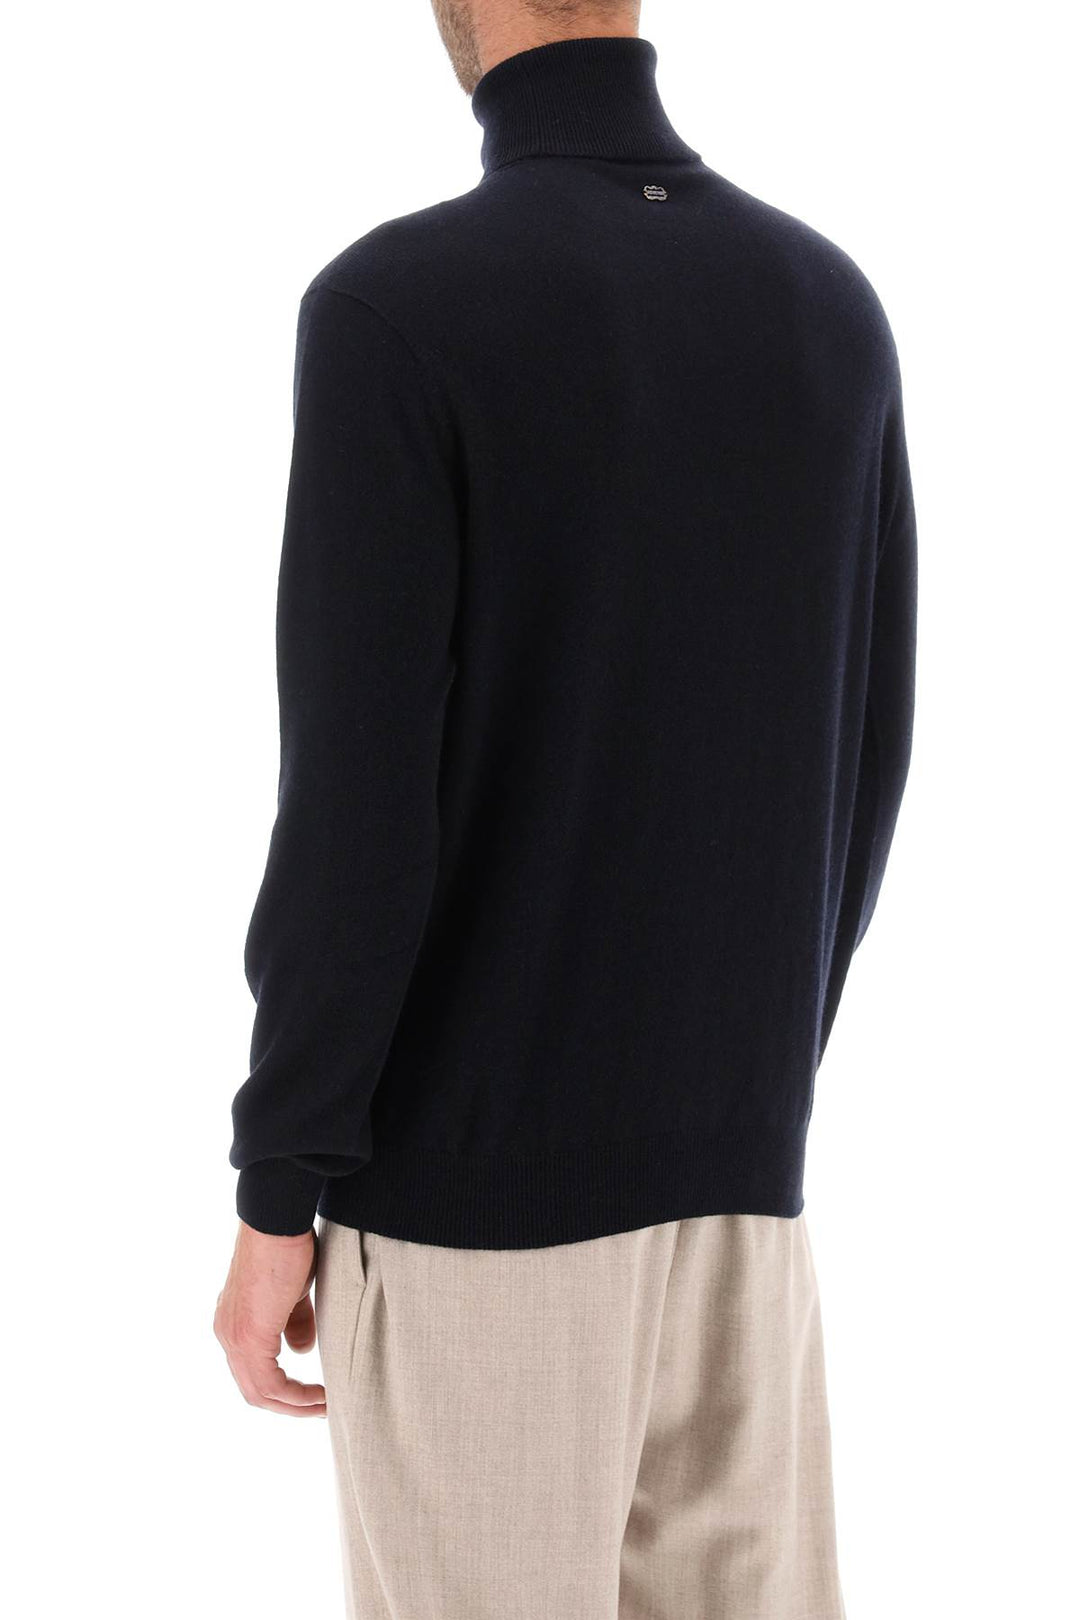 Agnona Seamless Cashmere Turtleneck Sweater   Blu